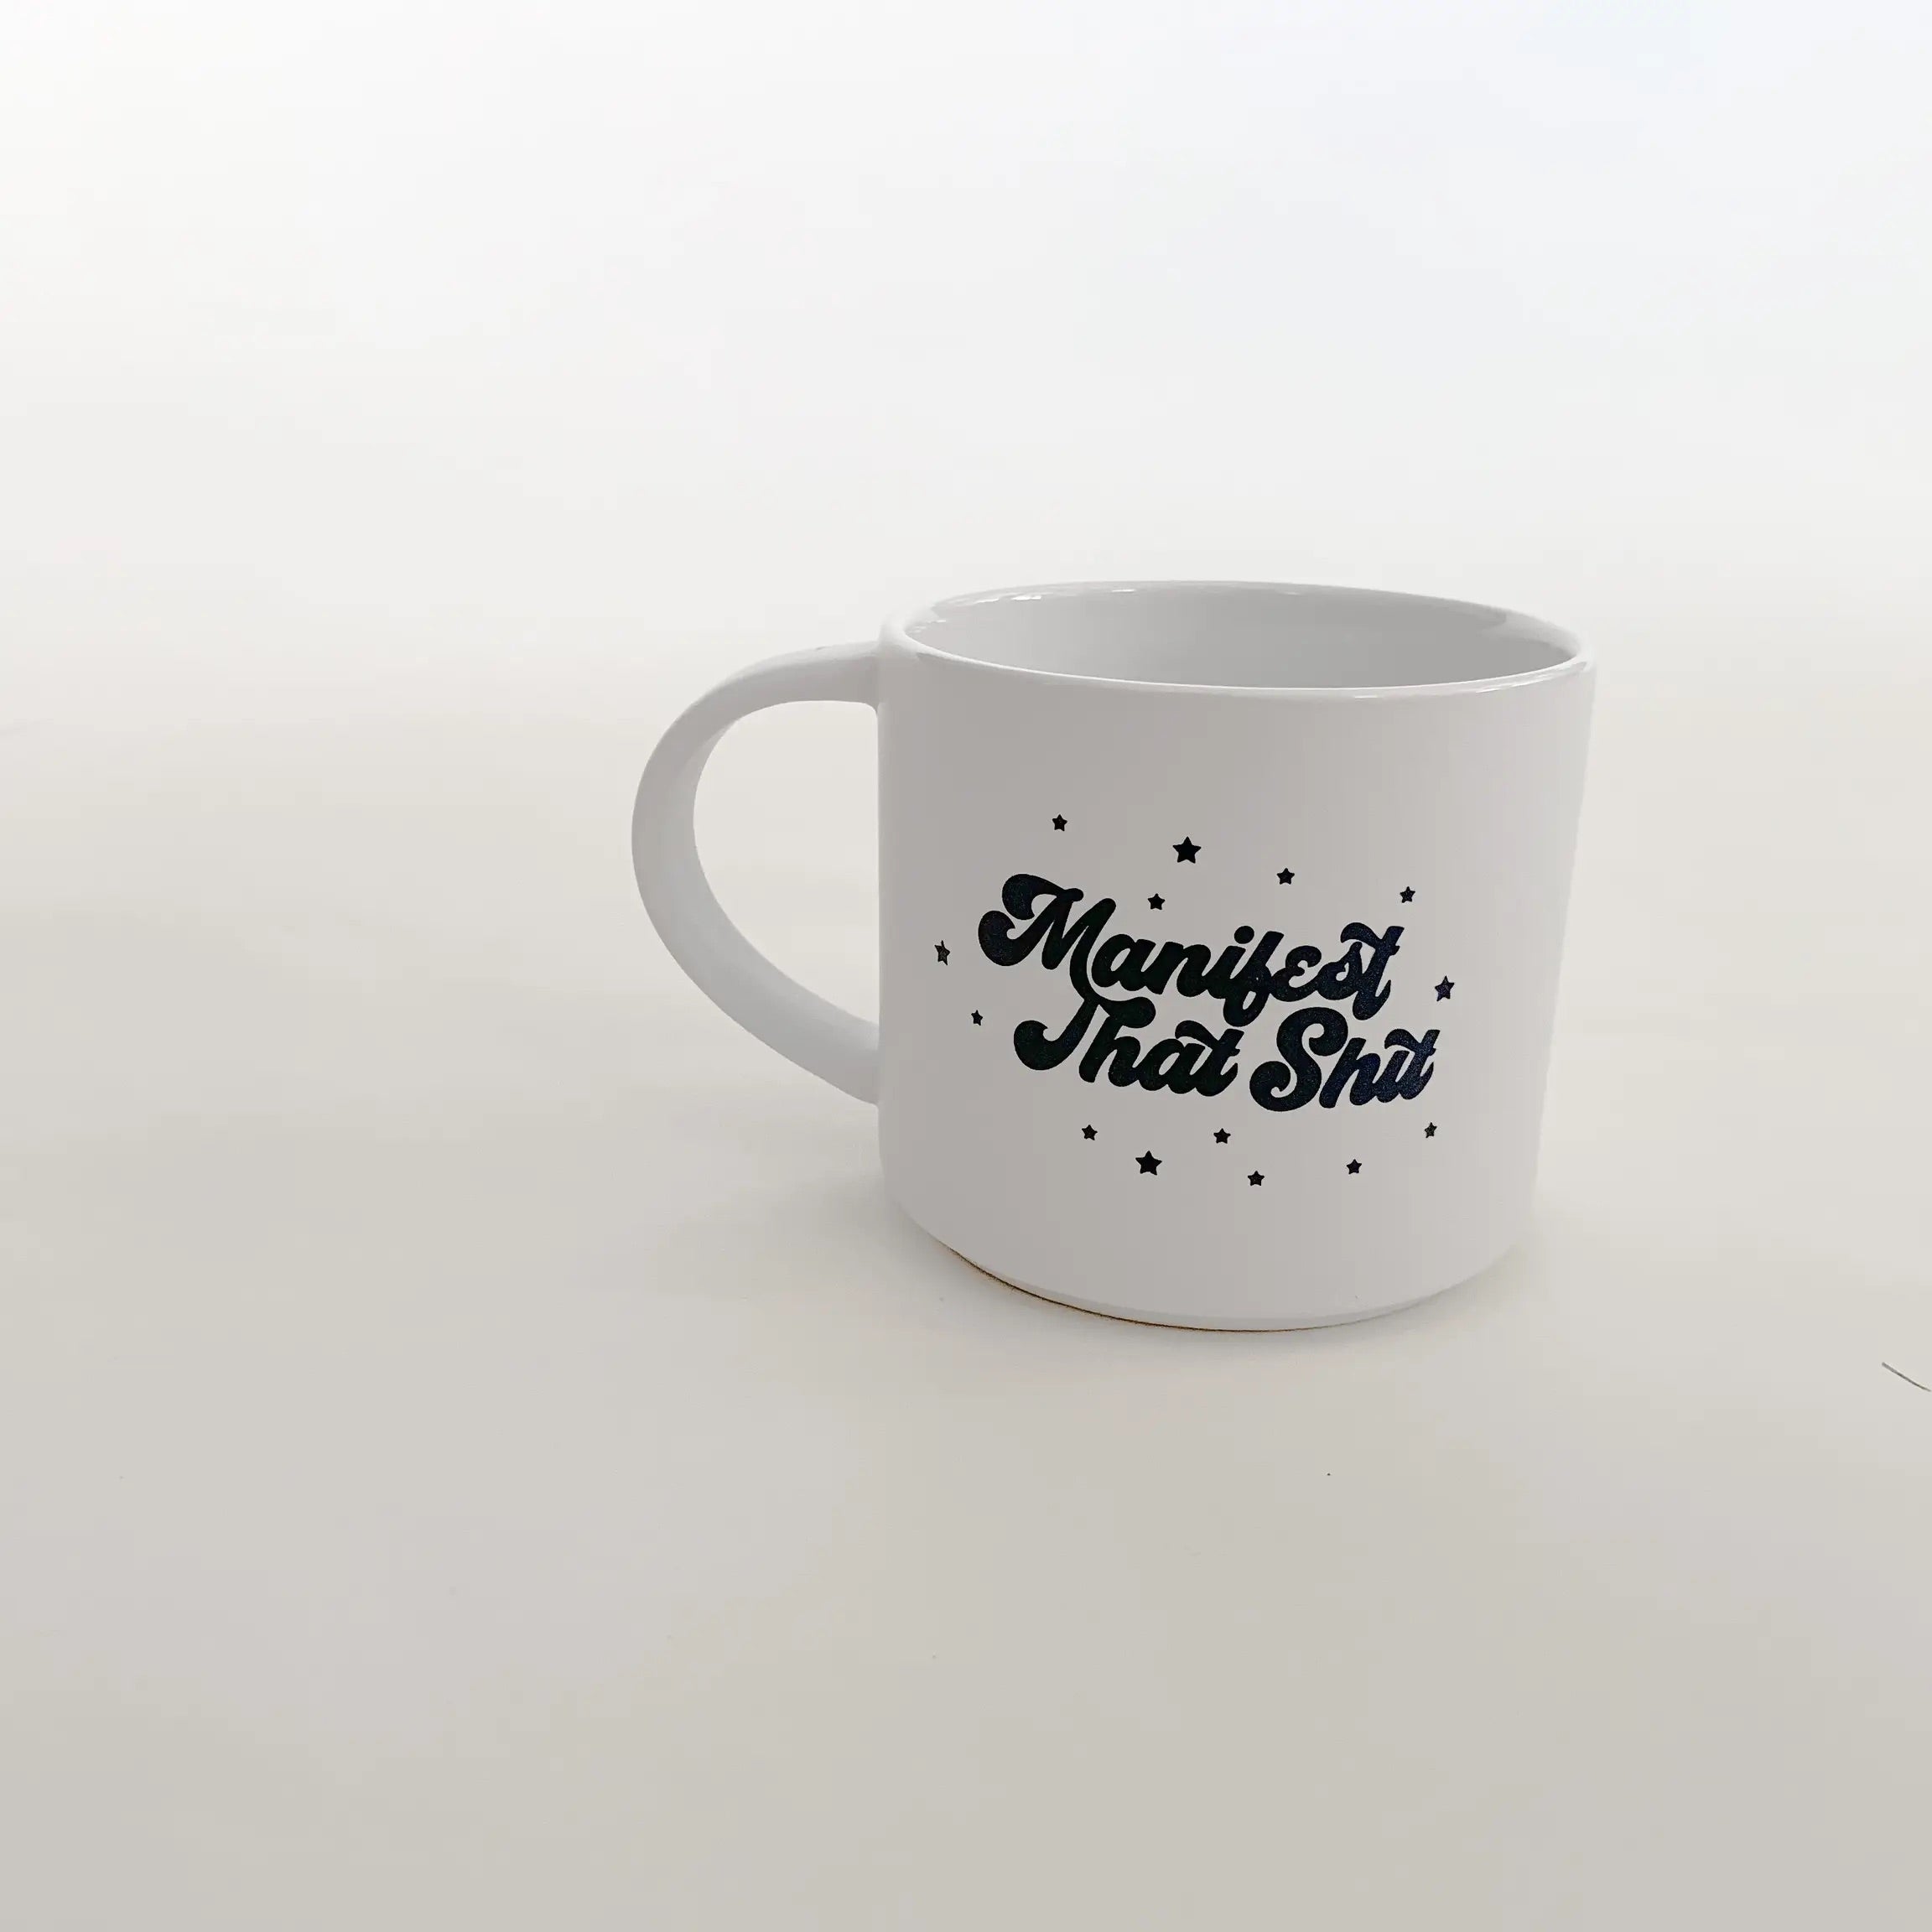 Manifest mug